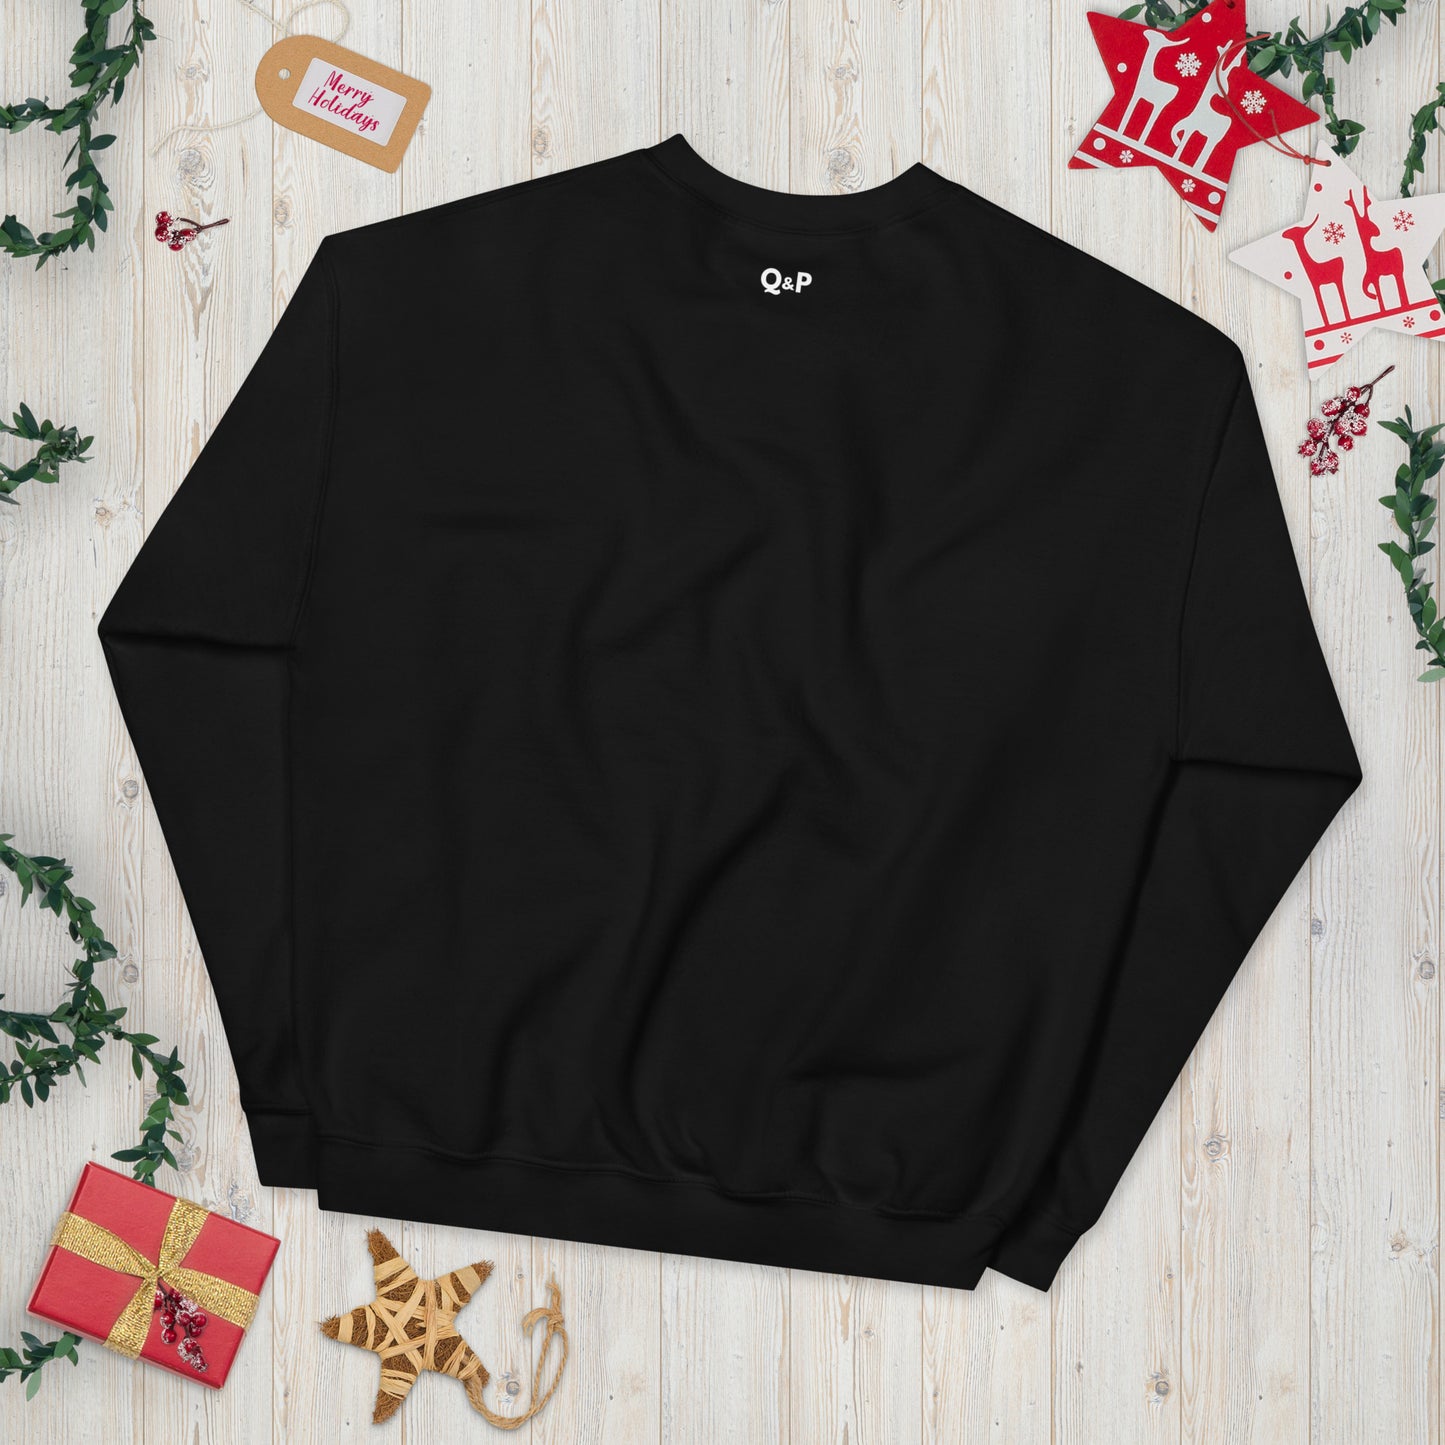 Abide - Christmas Unisex Sweatshirt